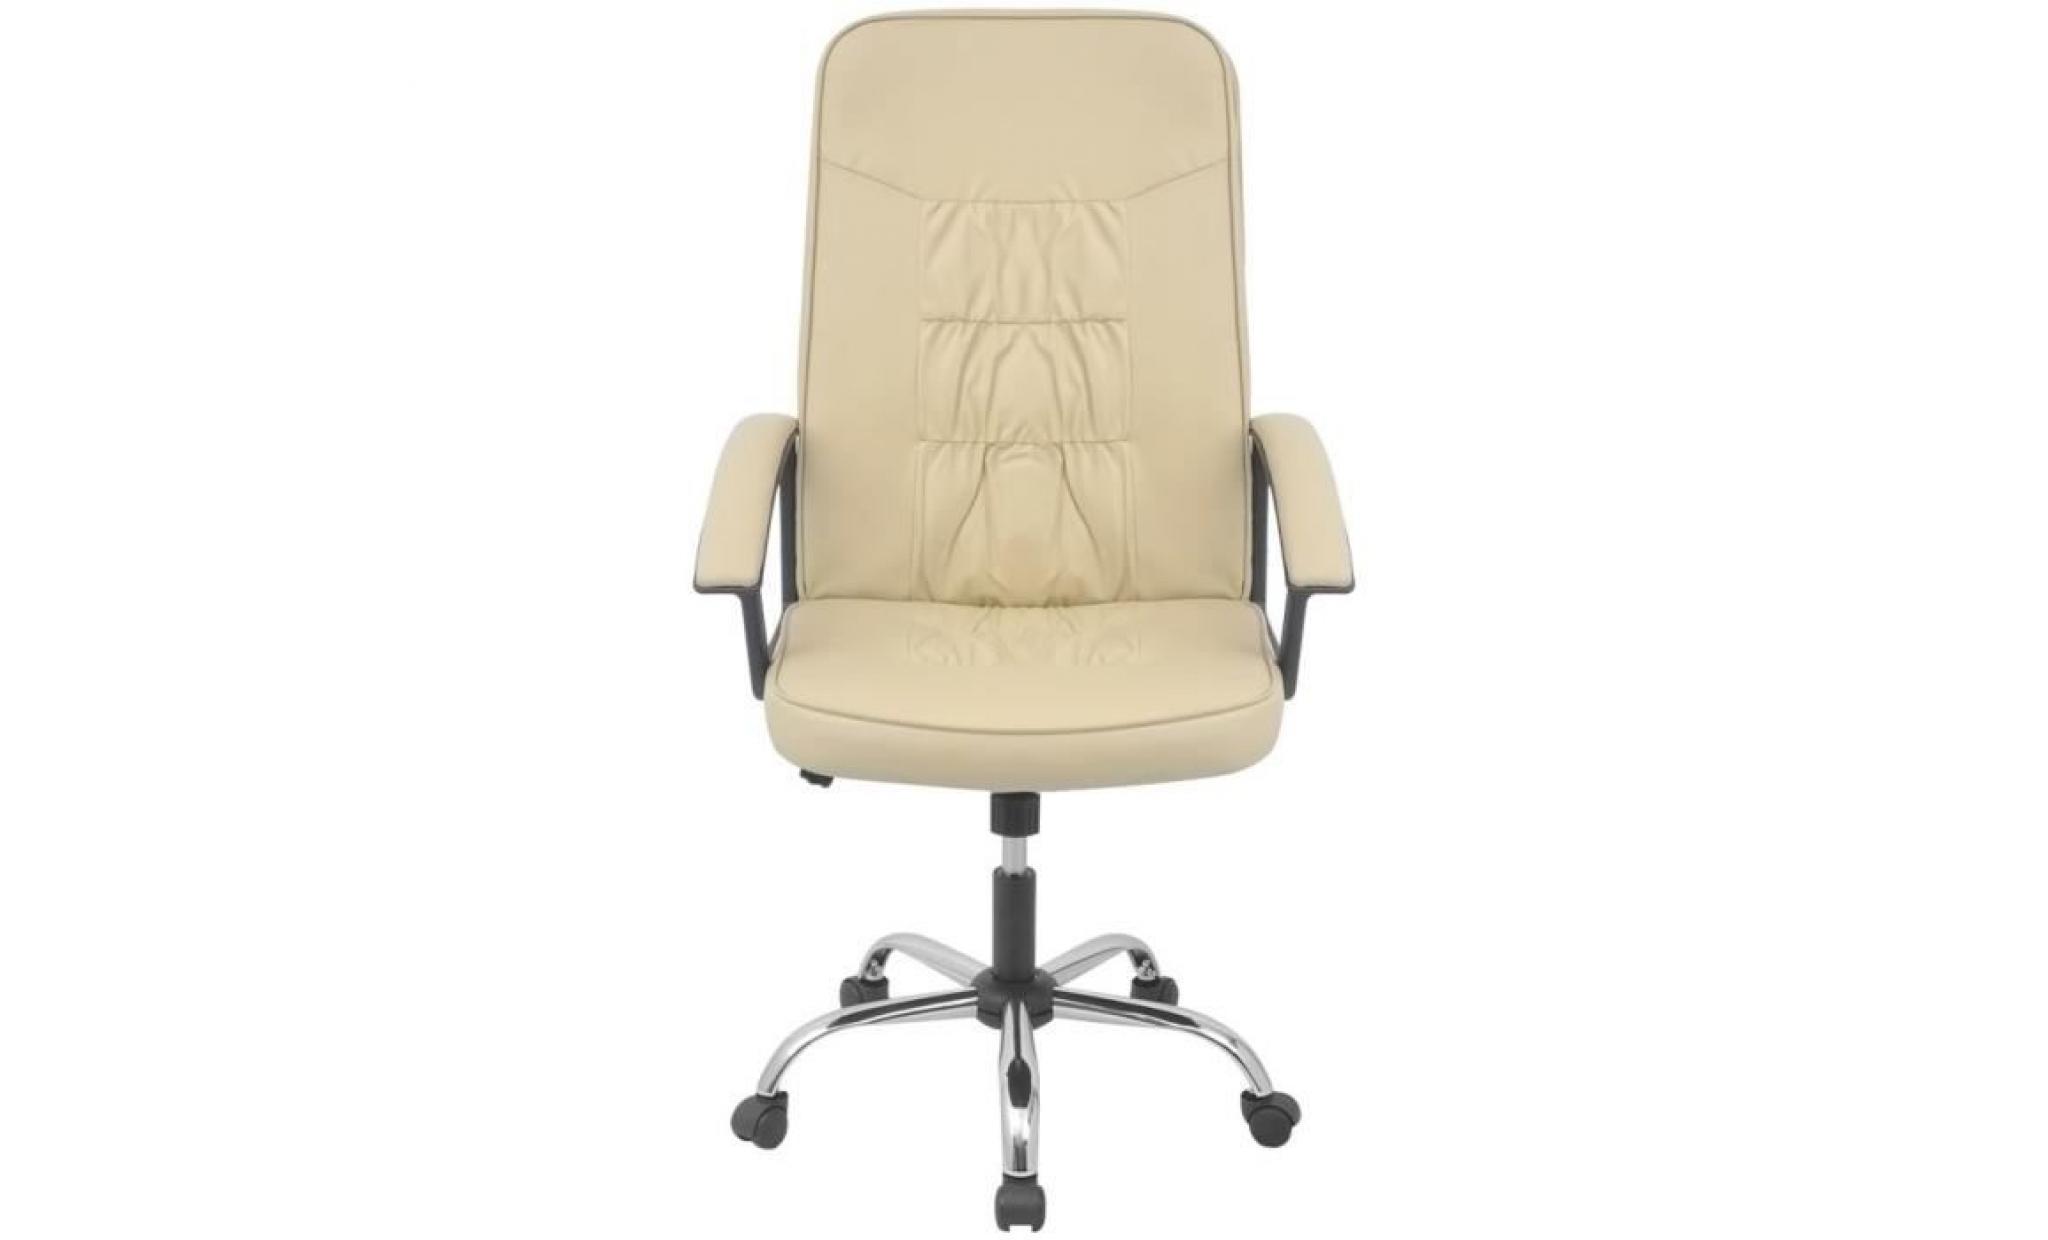 r118 ce fauteuil pivotant en contreplaque et en cuir synthetique sera un ajout elegant a n'importe quelle piece de votre